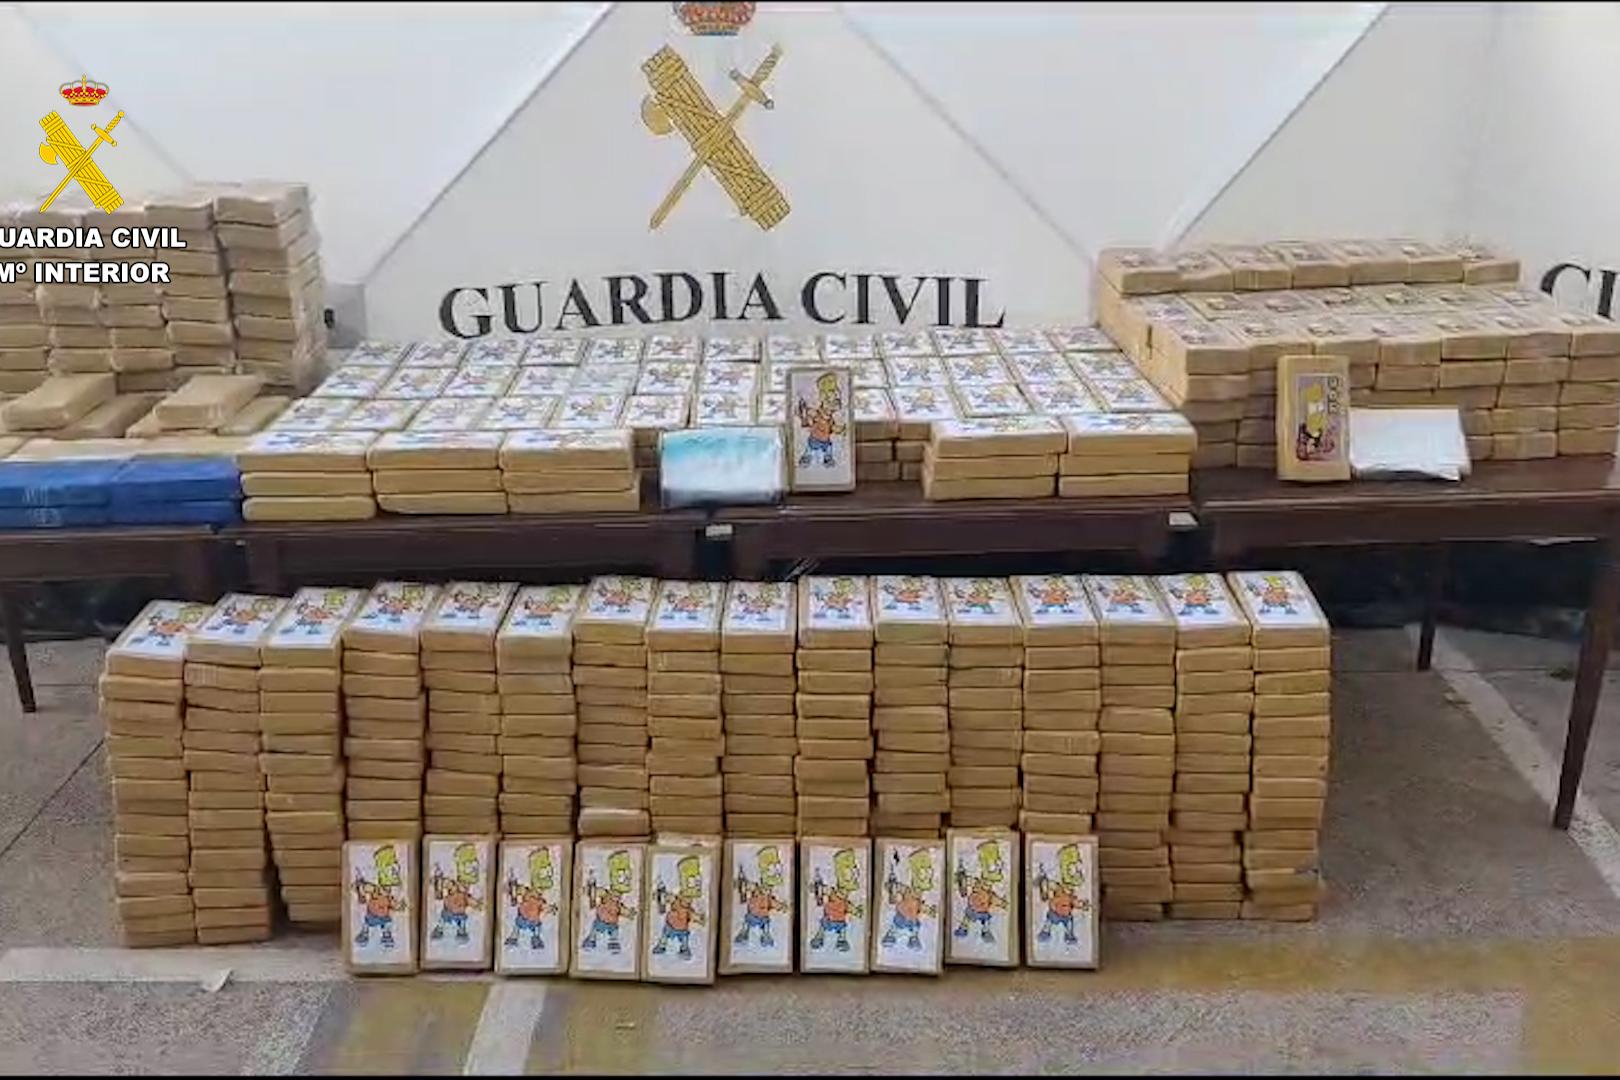 Imagen de los 600 kilos de cocaína Incautados, que encontraron ocultutos en un contenedor en un polígono de Quart de Poblet (Valencia)